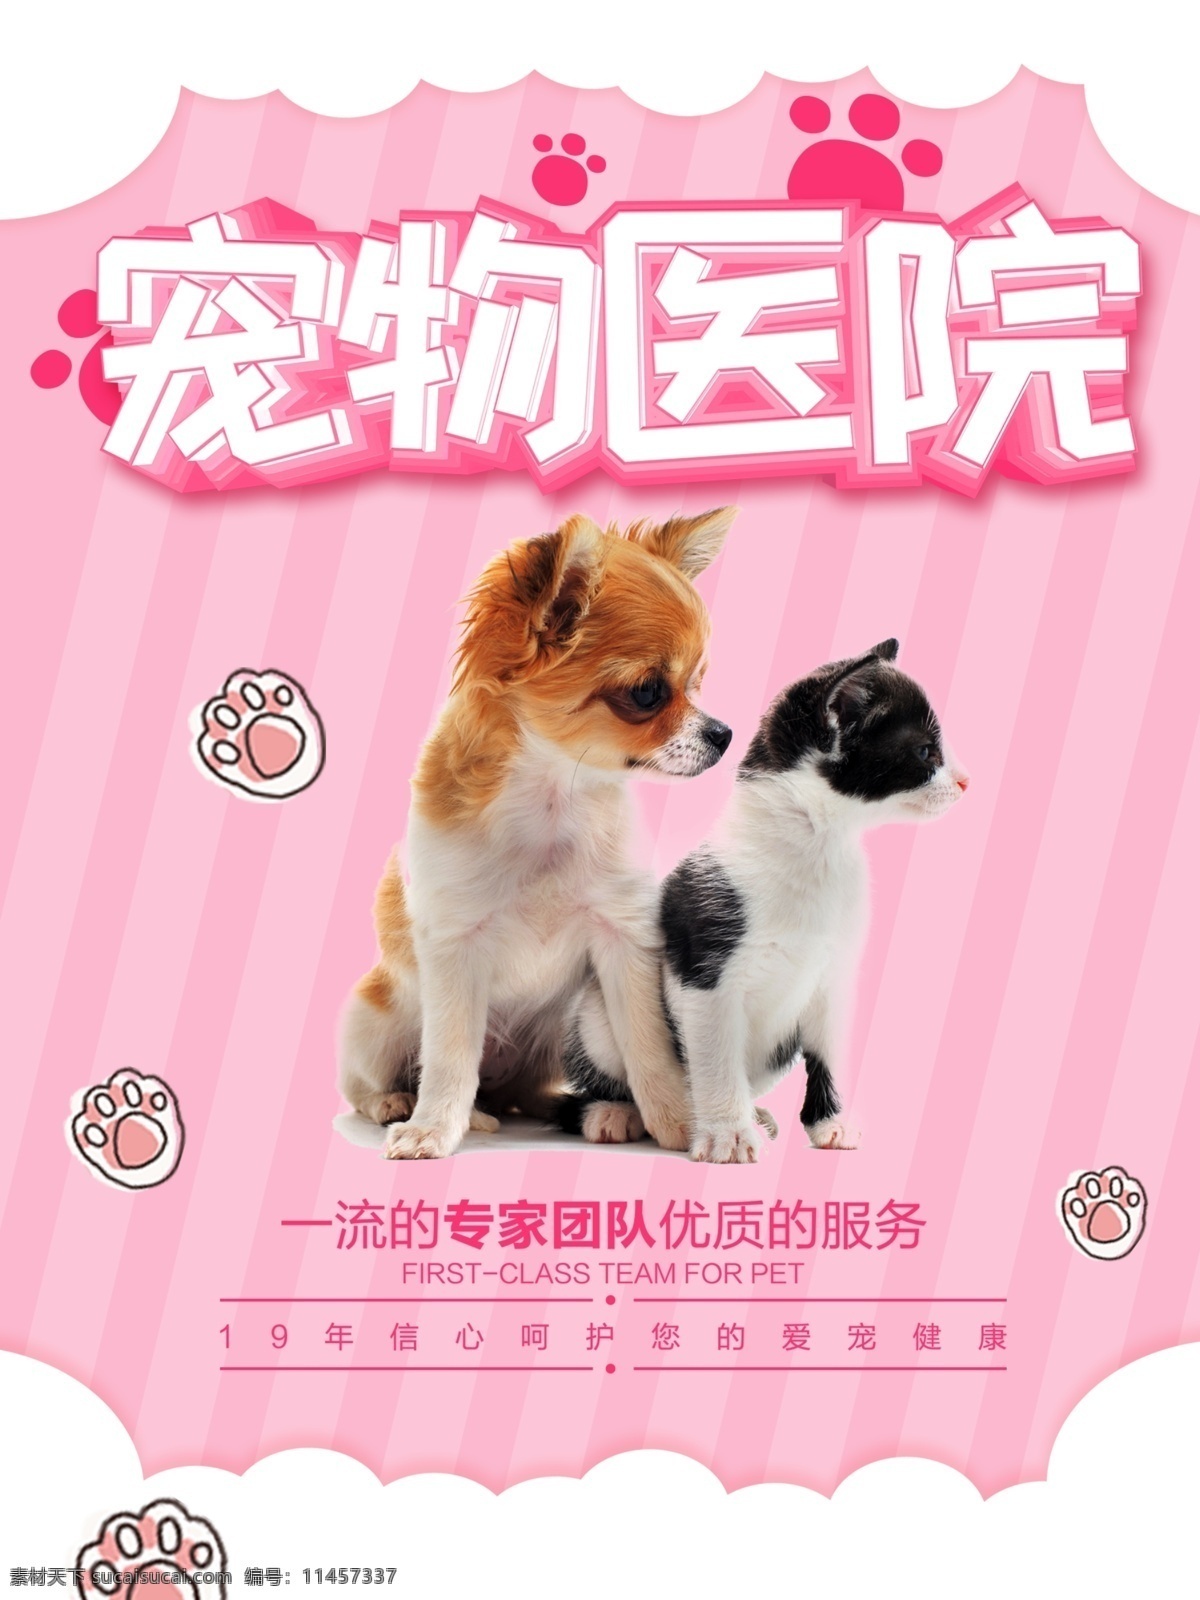 萌 哒 粉色 可爱 宠物医院 宣传 促销 海报 促销海报 宠物 动物 清新 宠物诊所 小猫 小狗 条纹背景